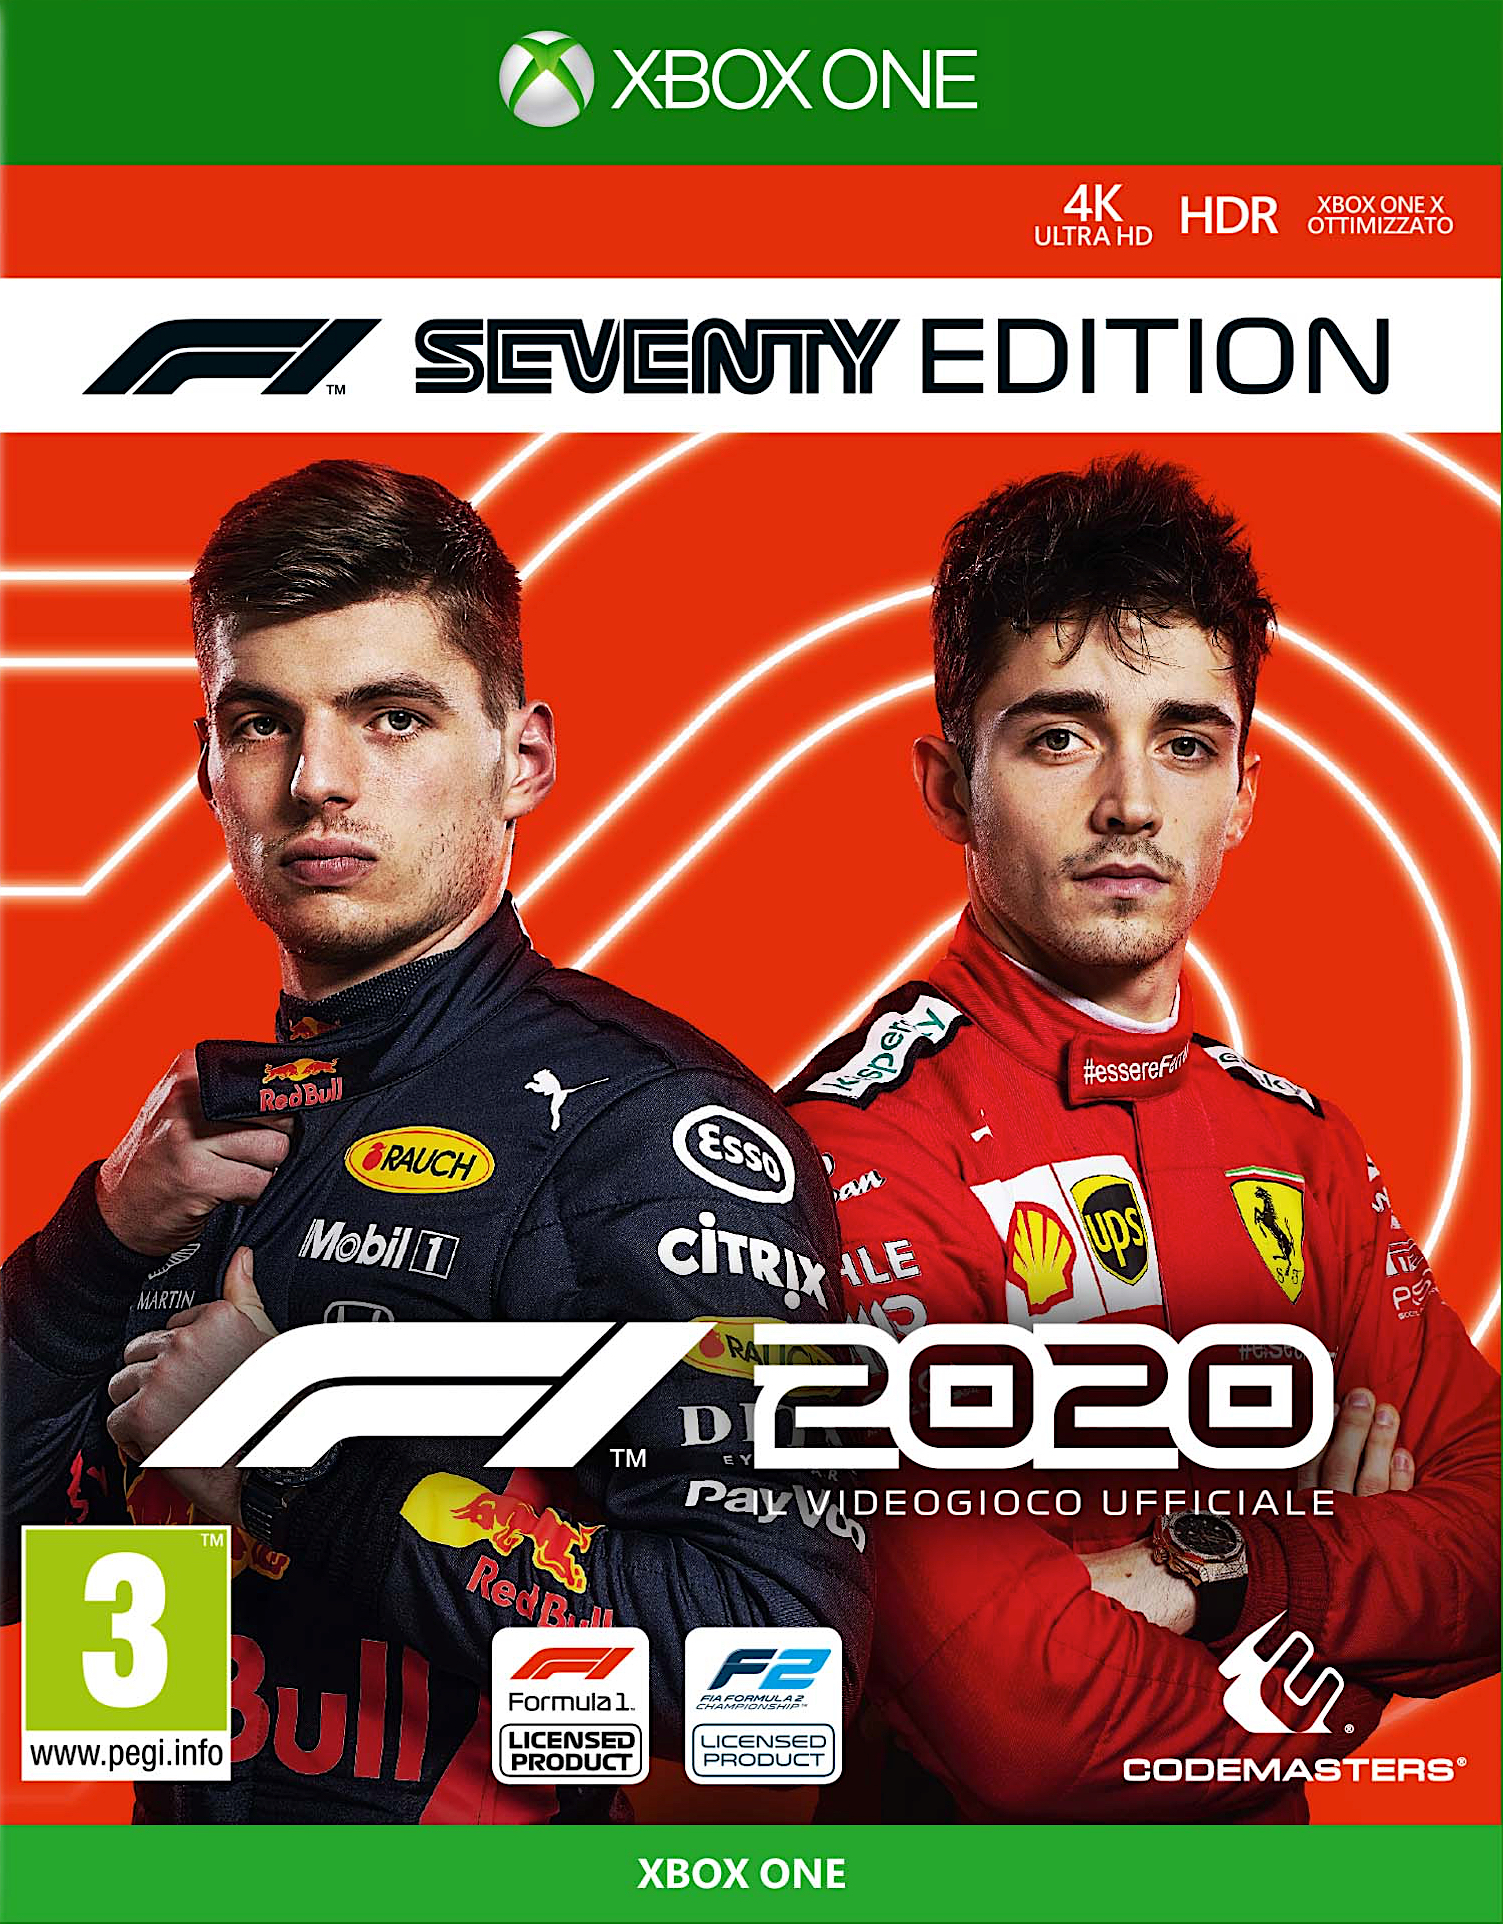 jaquette du jeu vidéo F1 2020